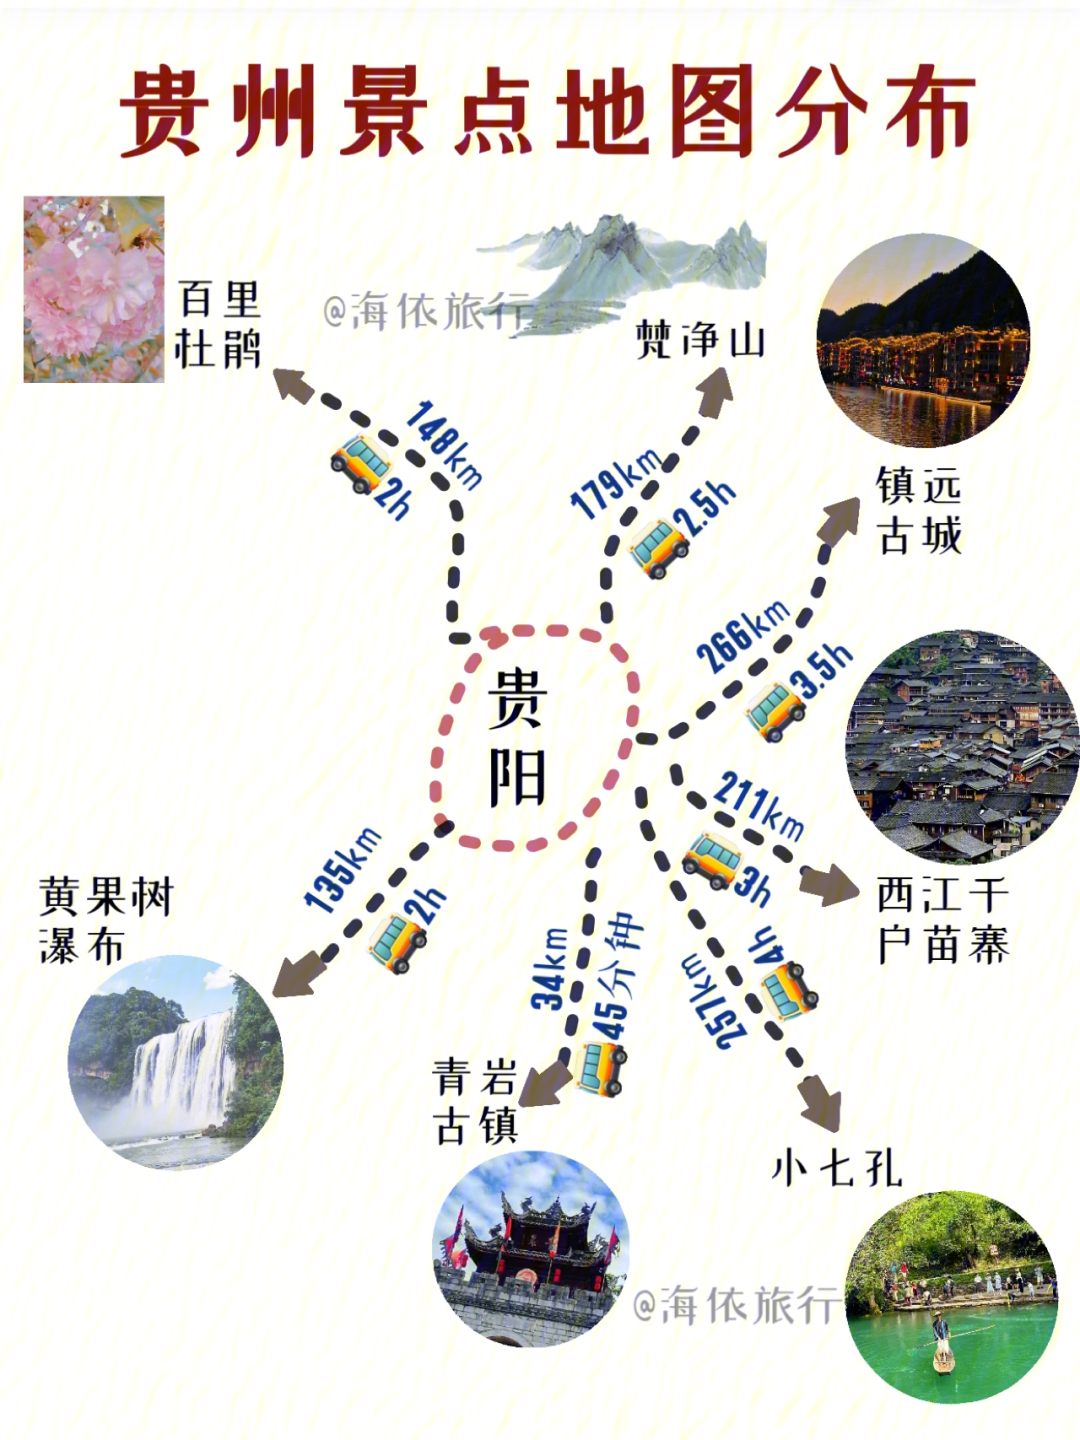 贵州旅游景点大全地图图片